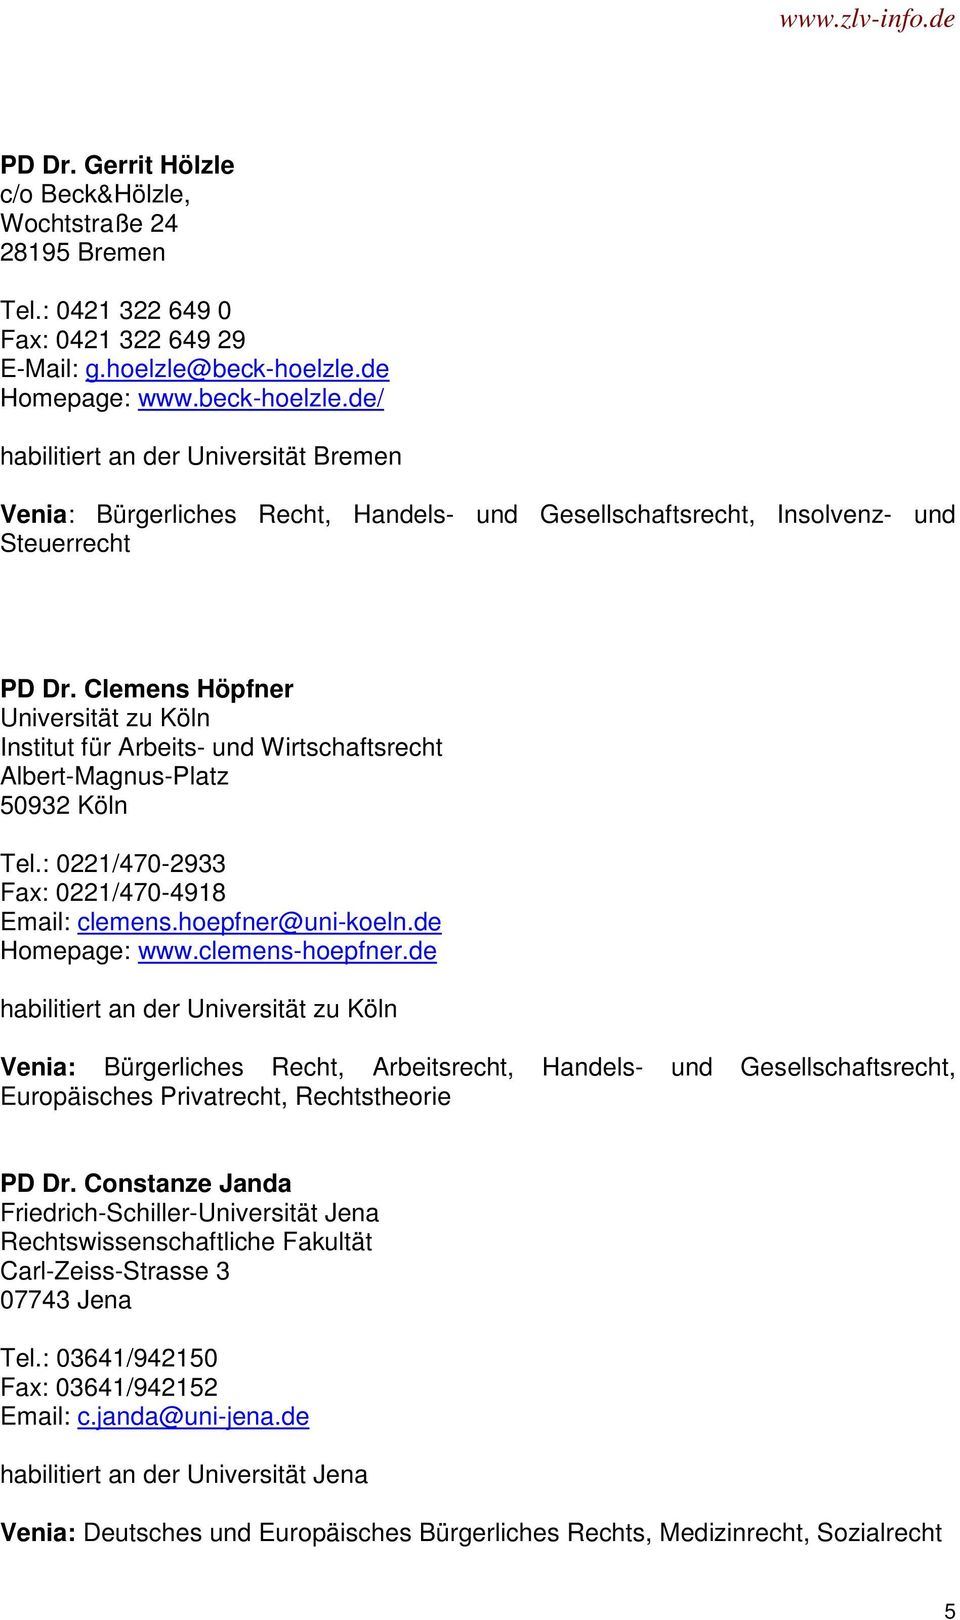 Clemens Höpfner Universität zu Köln Institut für Arbeits- und Wirtschaftsrecht Albert-Magnus-Platz 50932 Köln Tel.: 0221/470-2933 Fax: 0221/470-4918 Email: clemens.hoepfner@uni-koeln.de Homepage: www.